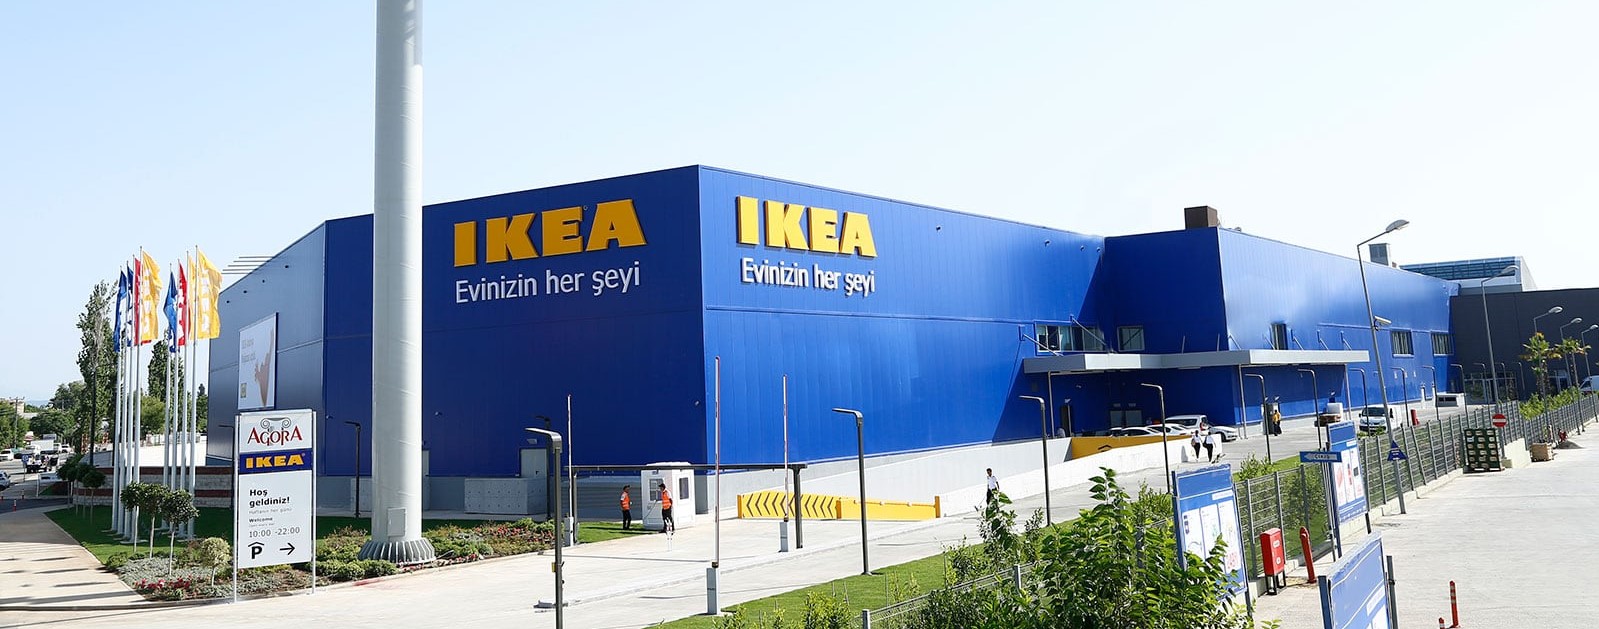 Икеа в анталии турция. Ikea Turkey Antalya. Ikea в Анталии. Ikea in Antalya.